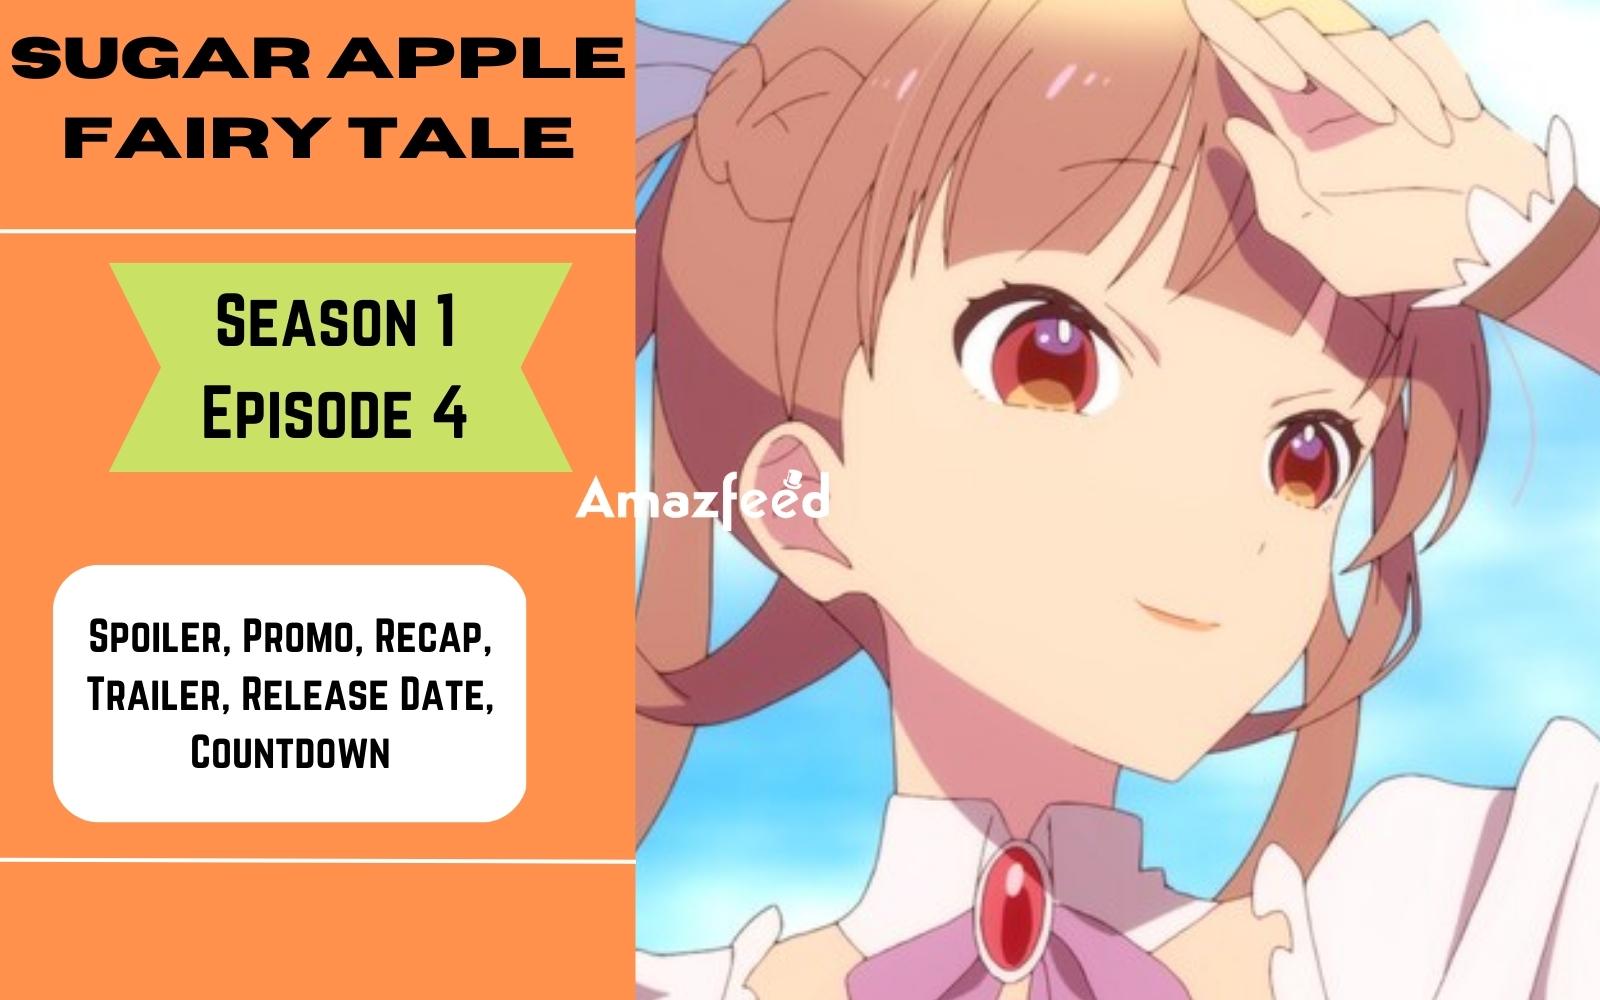 Watch Sugar Apple Fairy Tale season 1 episode 5 streaming online